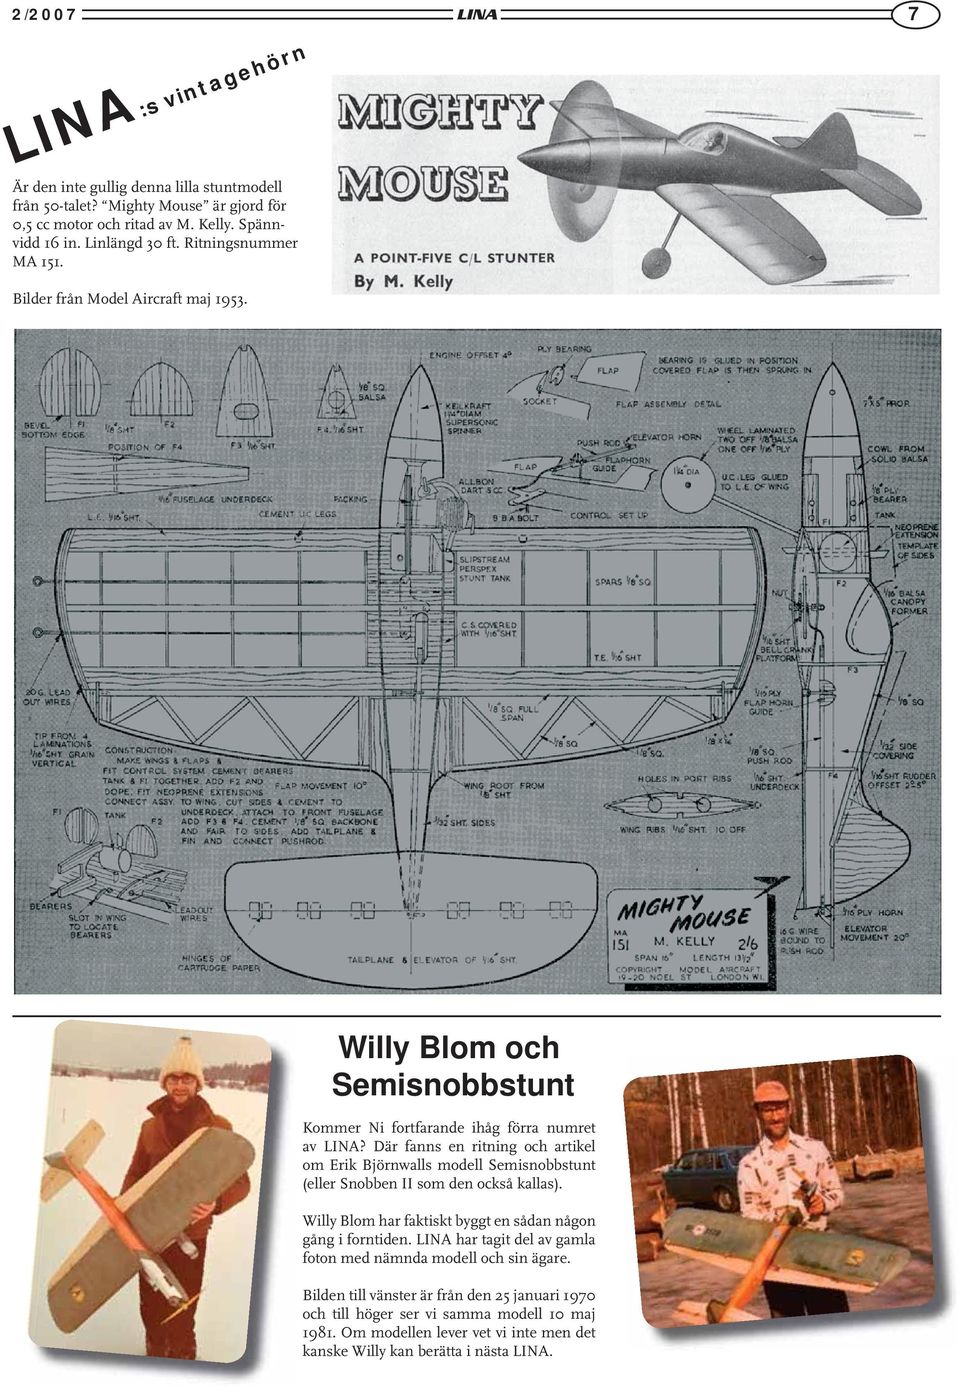 Där fanns en ritning och artikel om Erik Björnwalls modell Semisnobbstunt (eller Snobben II som den också kallas). Willy Blom har faktiskt byggt en sådan någon gång i forntiden.